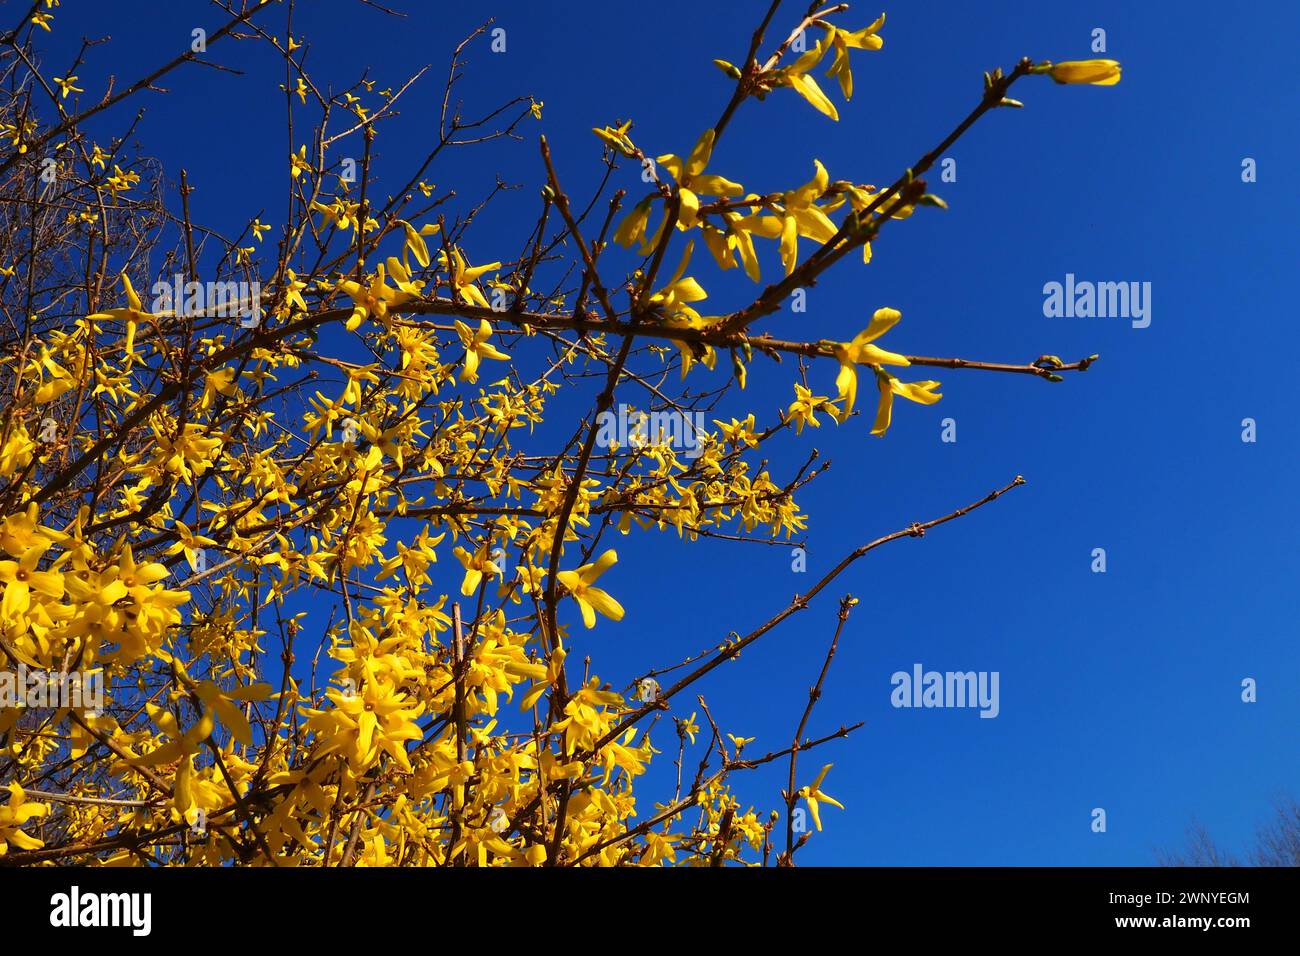 Forsythia est un genre d'arbustes et de petits arbres de la famille des oliviers. De nombreuses fleurs jaunes sur des branches et des pousses contre un ciel bleu. Lamiaceae Olive Banque D'Images